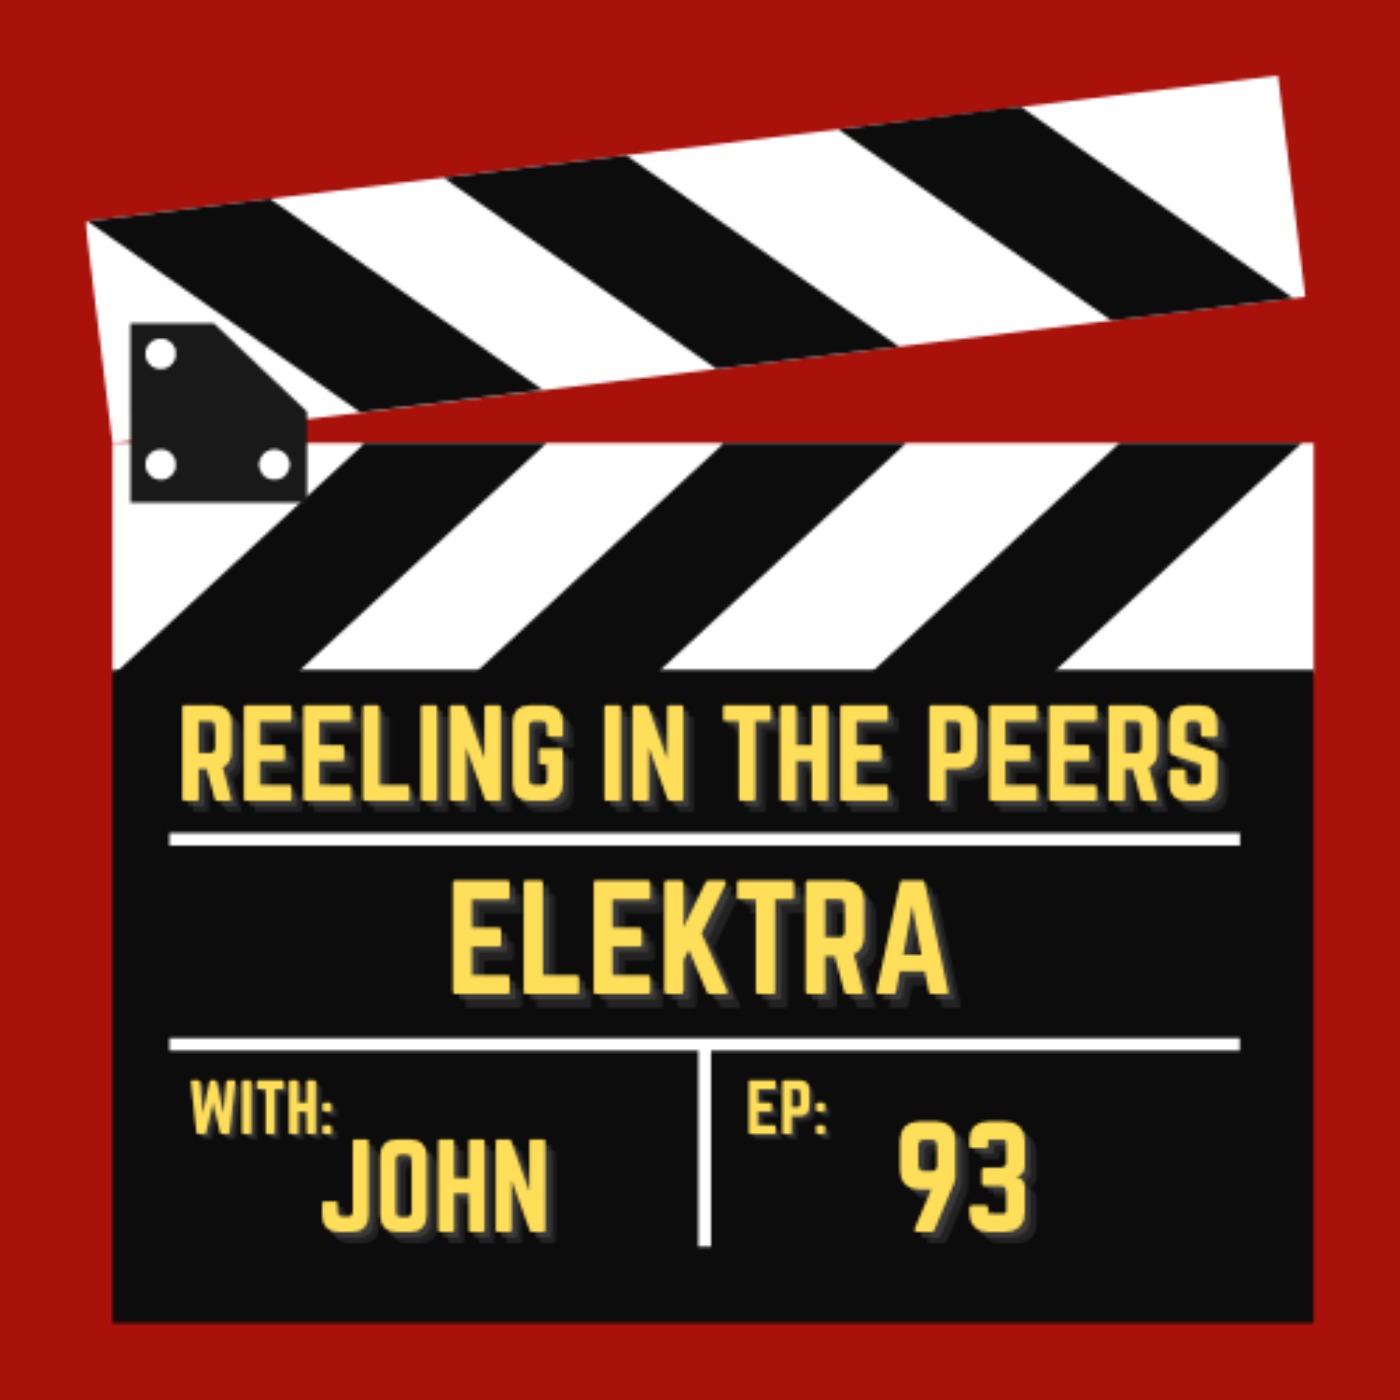 93 Elektra - Rotten Jomatoes